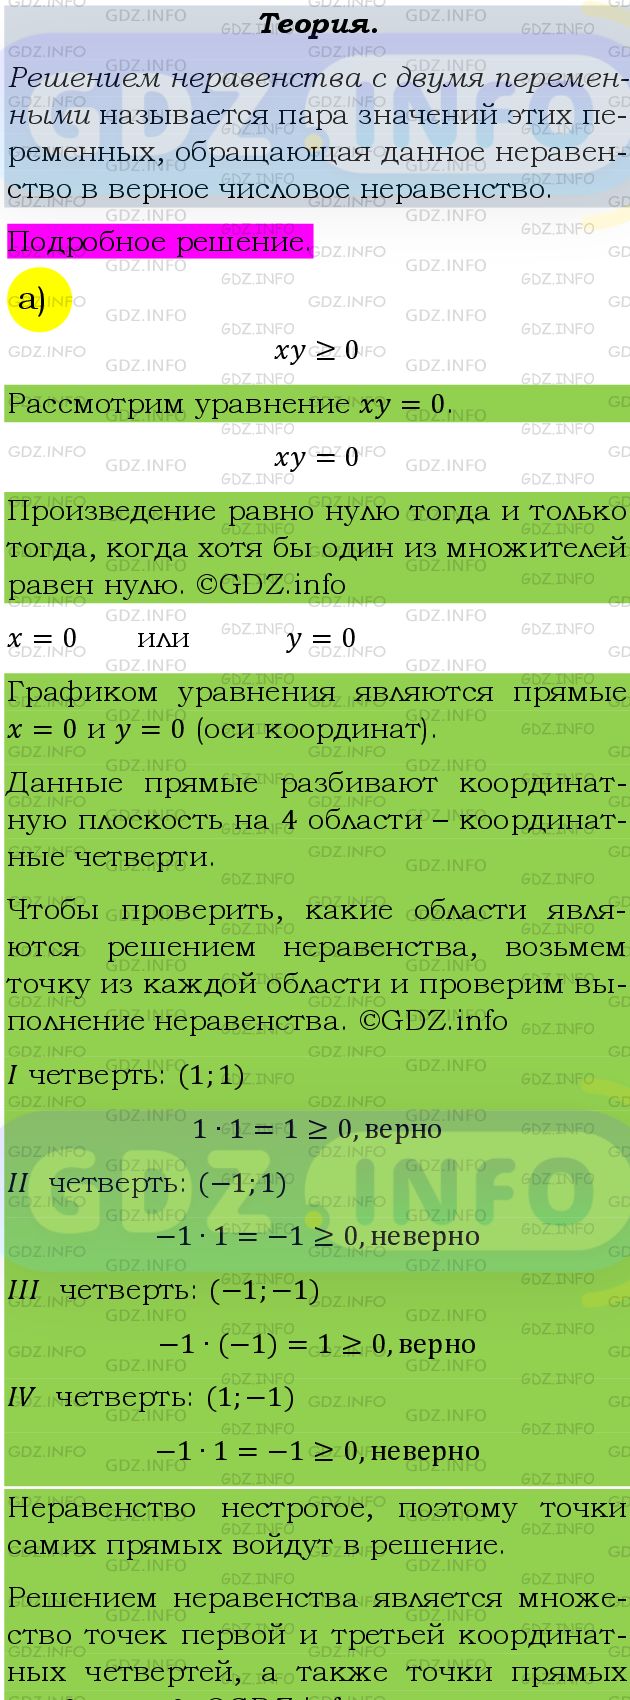 Фото подробного решения: Номер задания №457 из ГДЗ по Алгебре 9 класс: Макарычев Ю.Н.